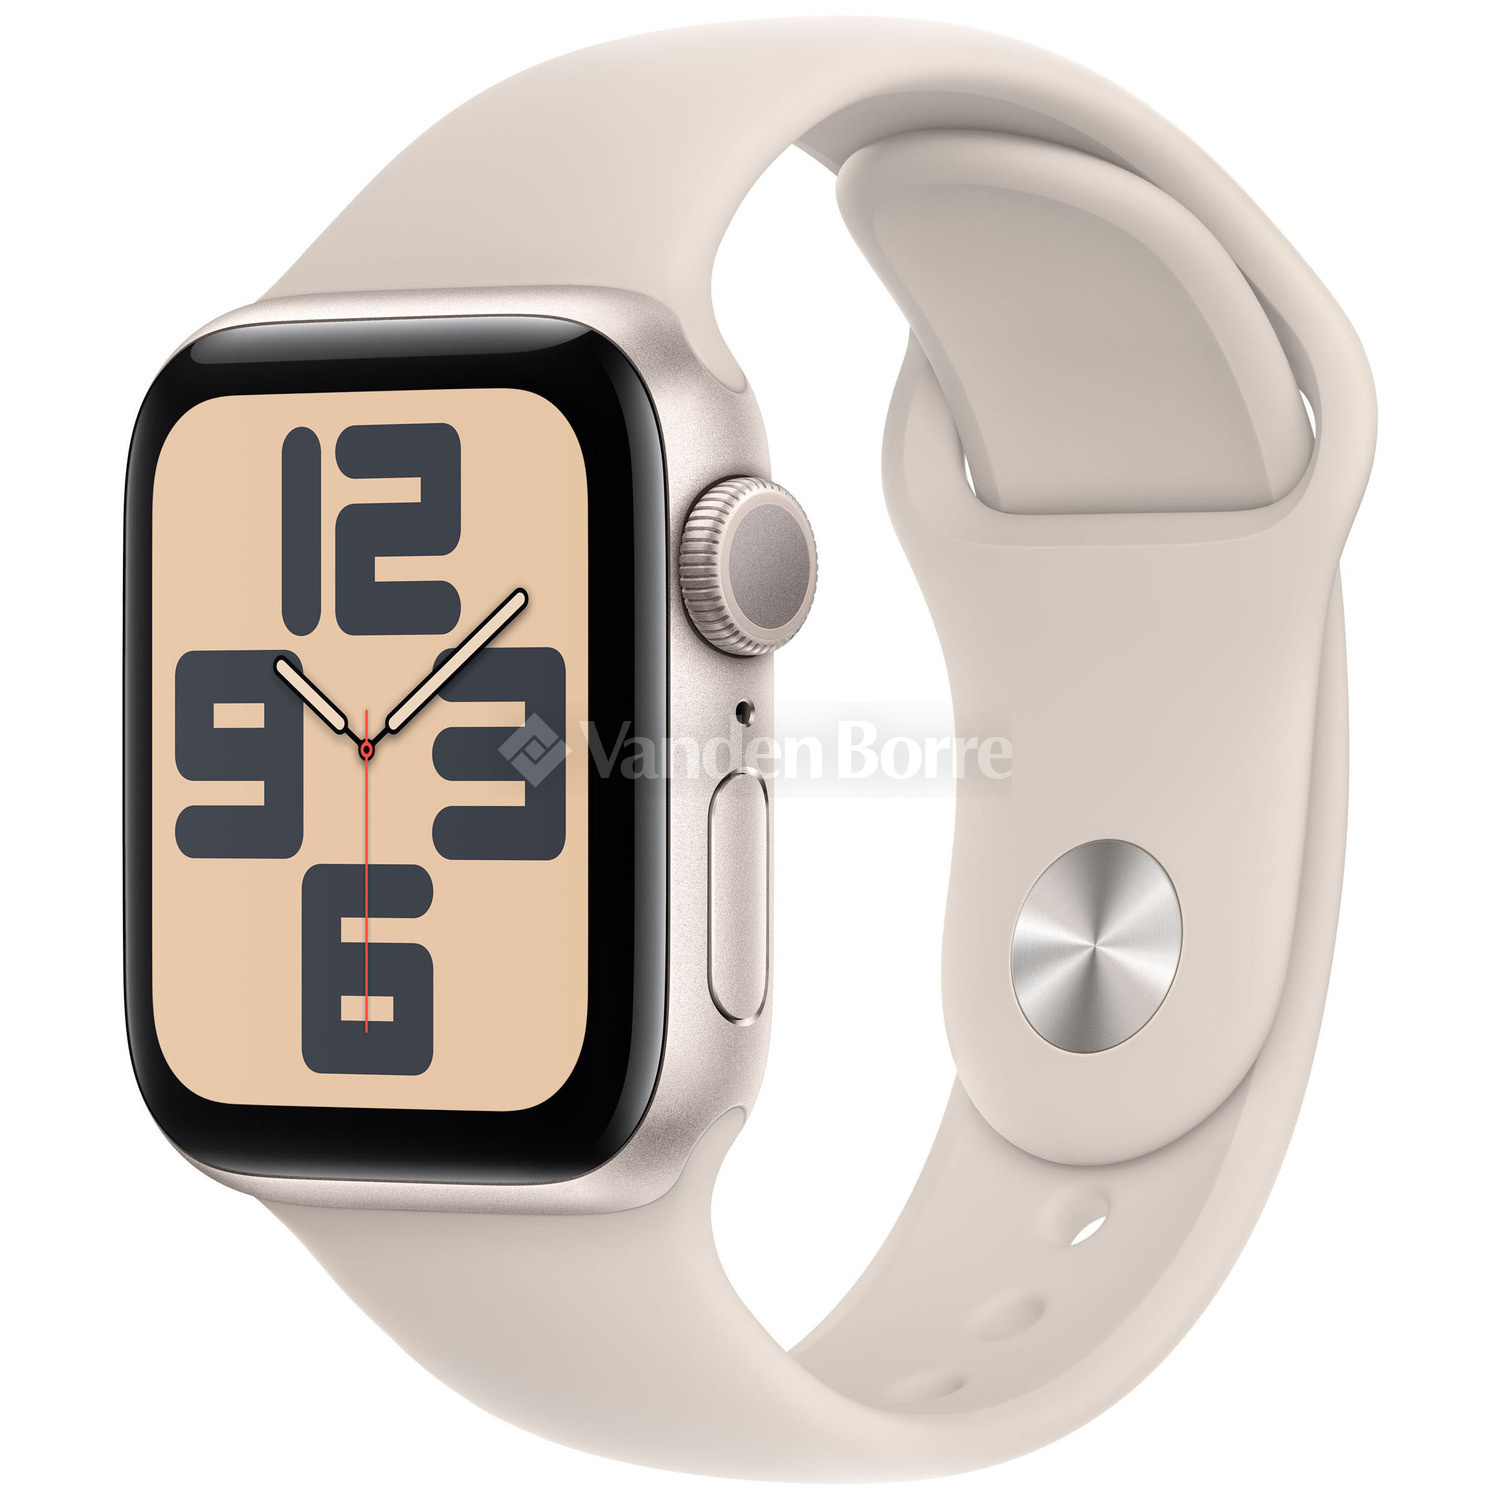 Tout savoir sur l'oxymètre de pouls (SpO2) de l'Apple Watch Series 6 